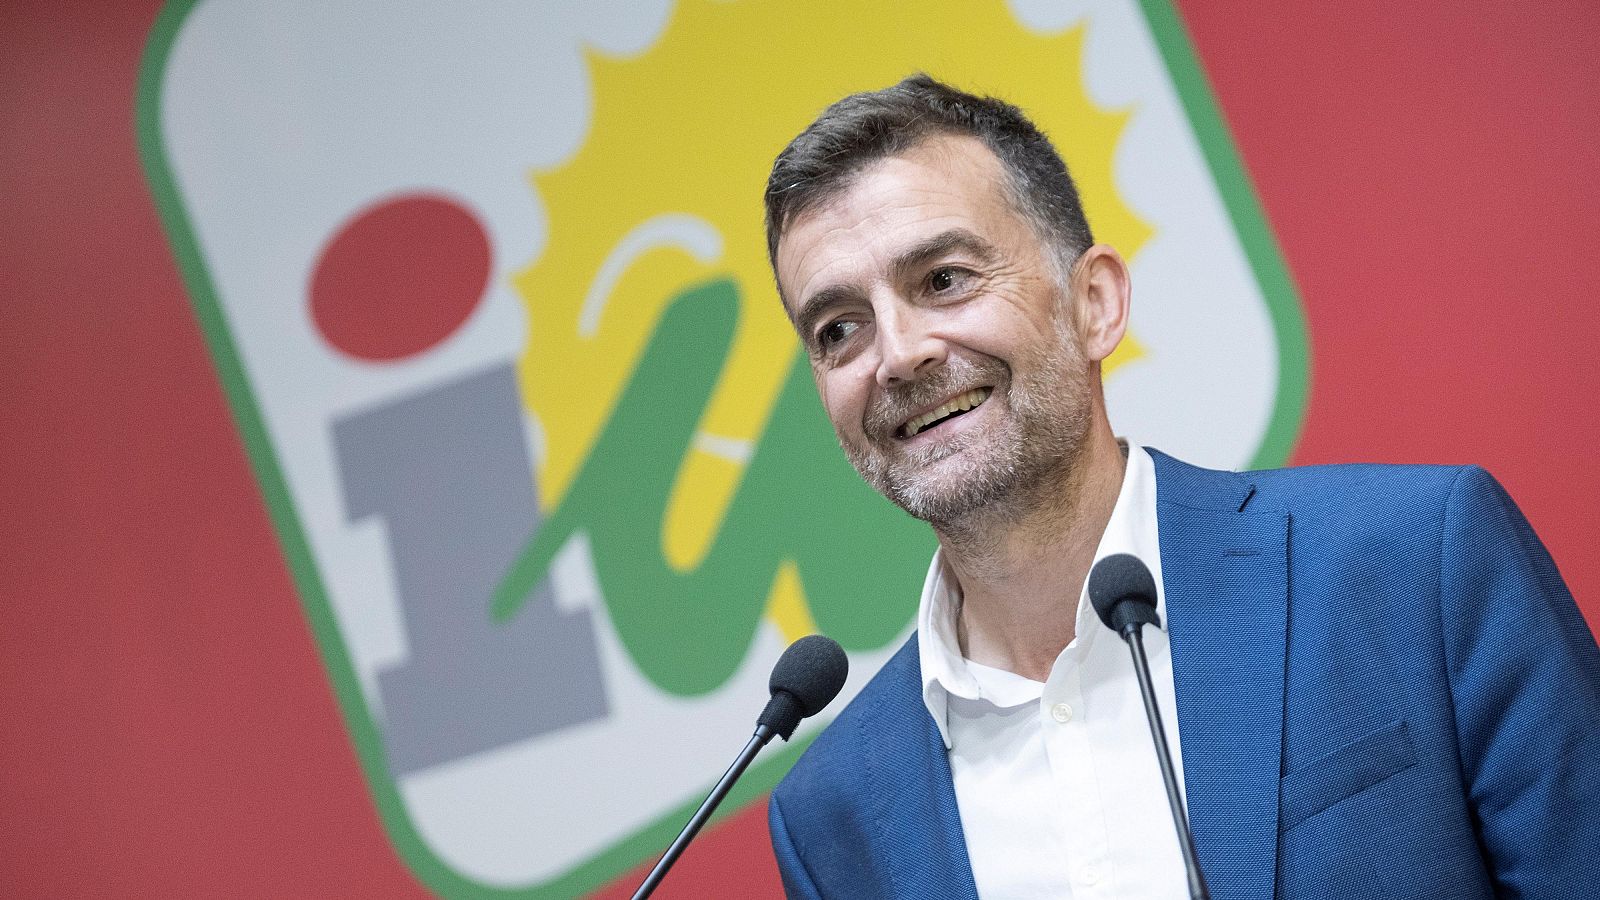 Antonio Maíllo gana las primarias de Izquierda Unida